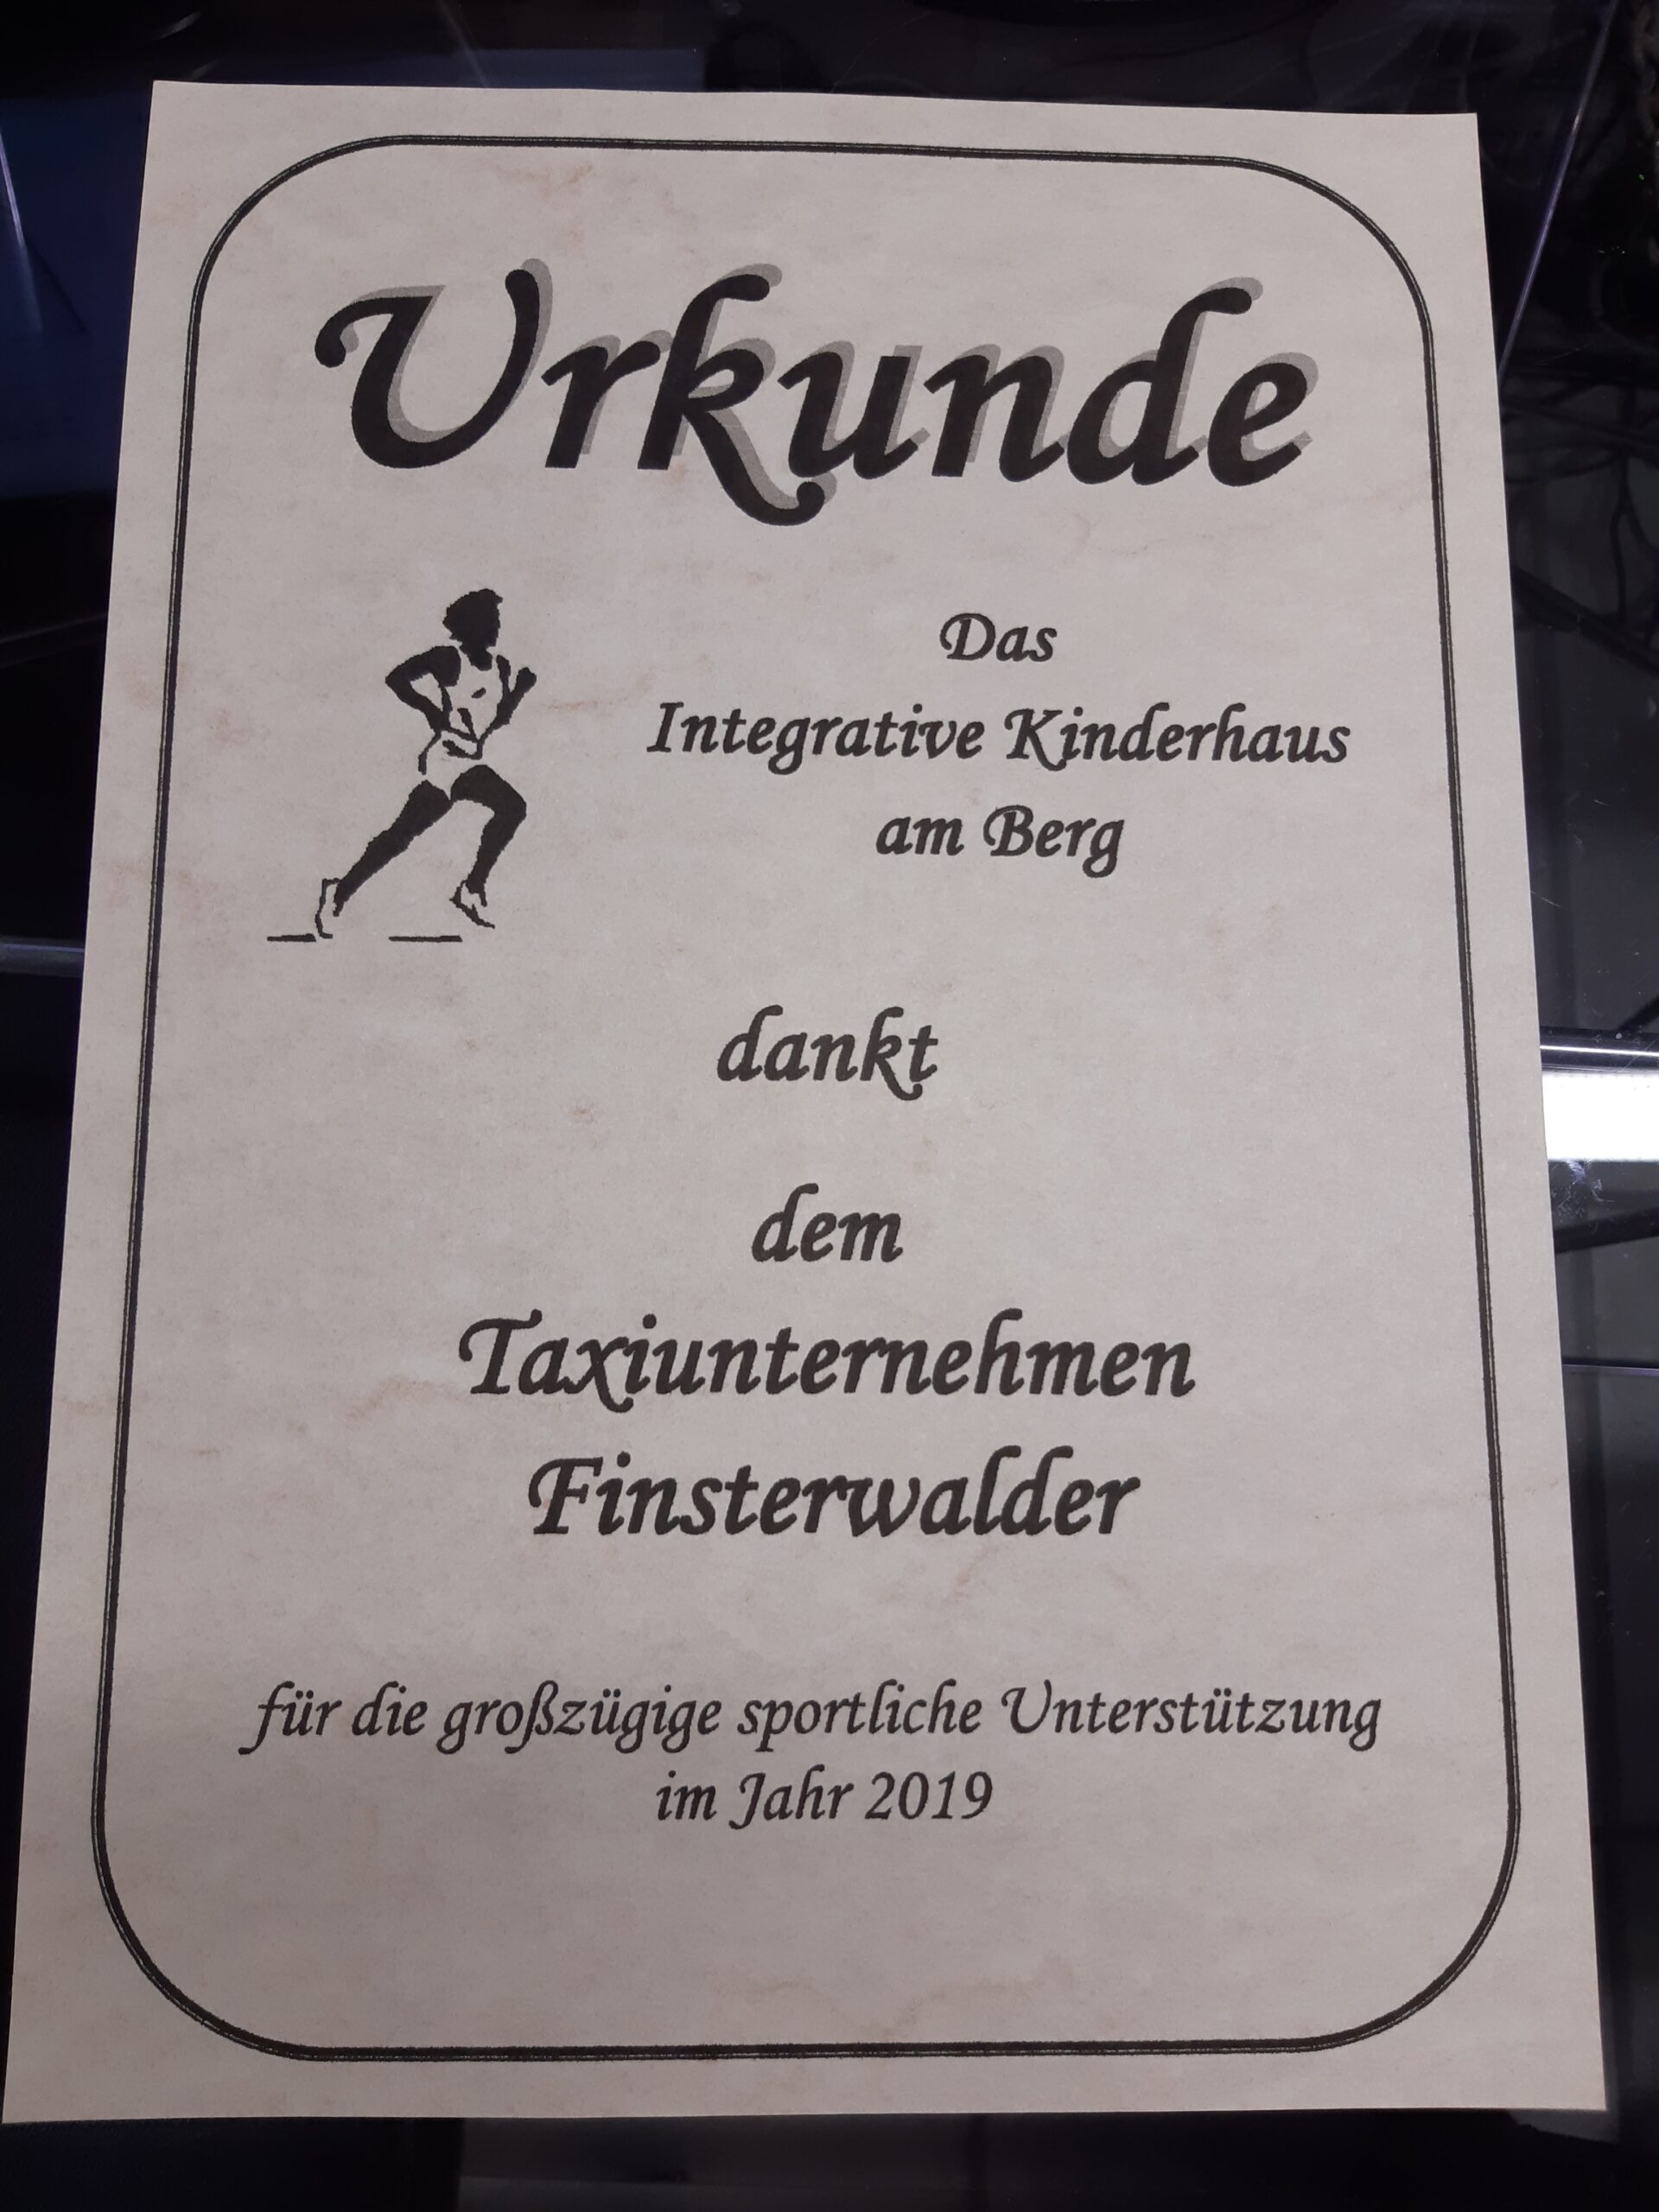 Foto einer Urkunde aus dem Jahr 2019, ausgestellt vom Interativem Kinderhaus am Berg (Peißenberg) an Frau Finsterwalder.